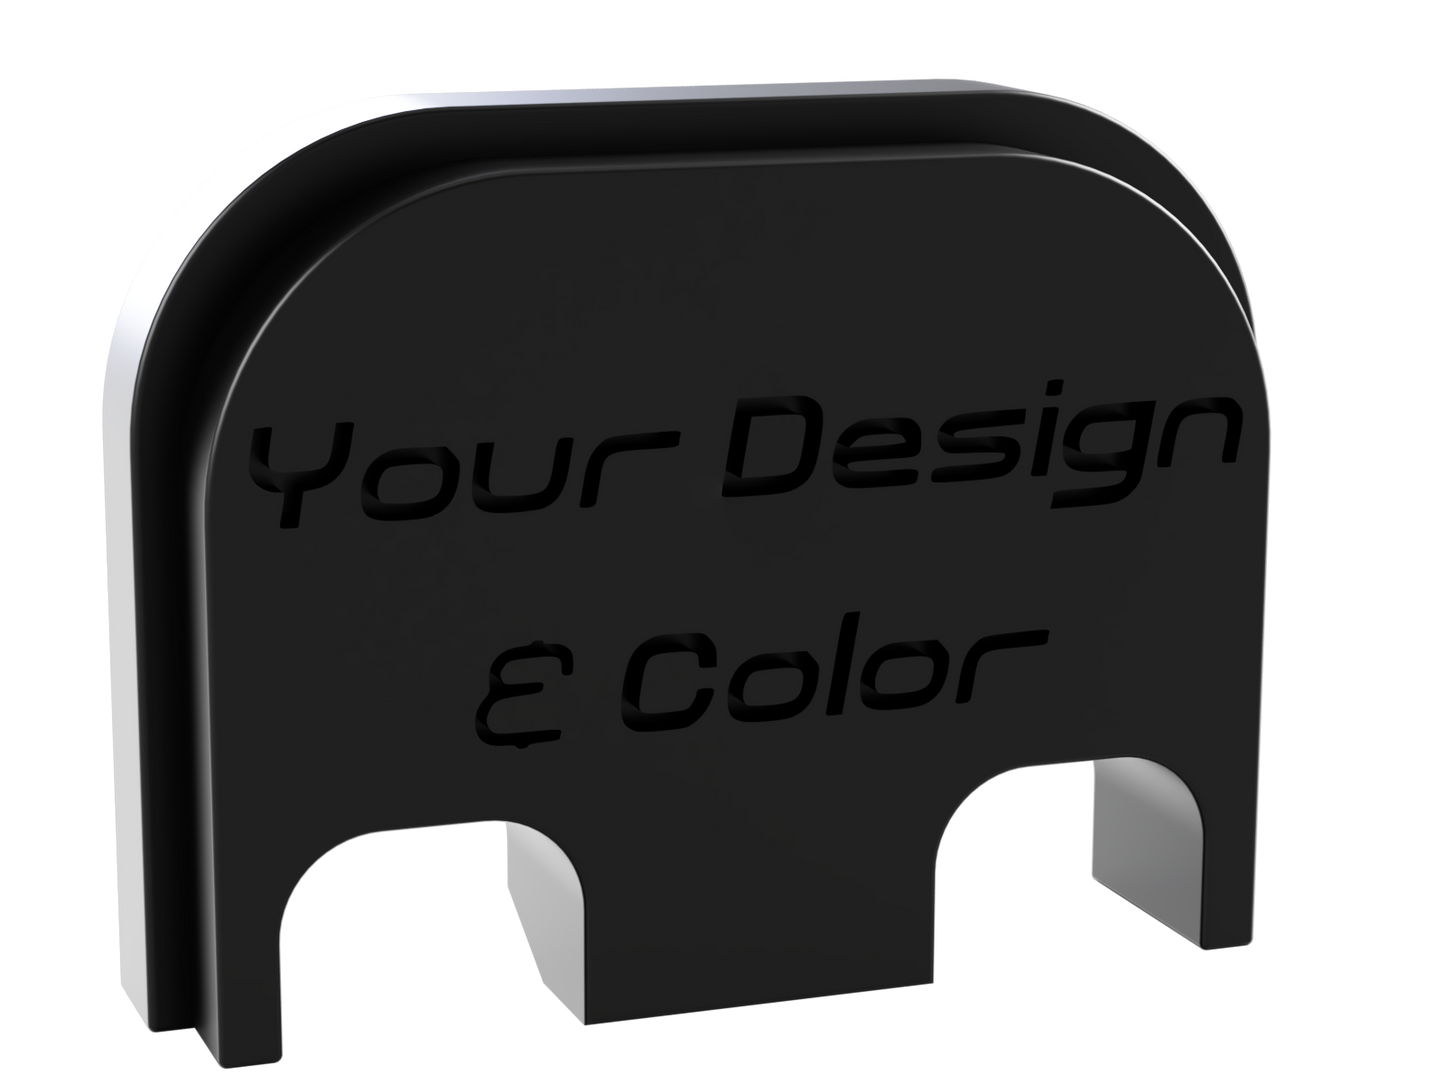 Your Design Your Color Glock Slide Back Plate Deep Engraving